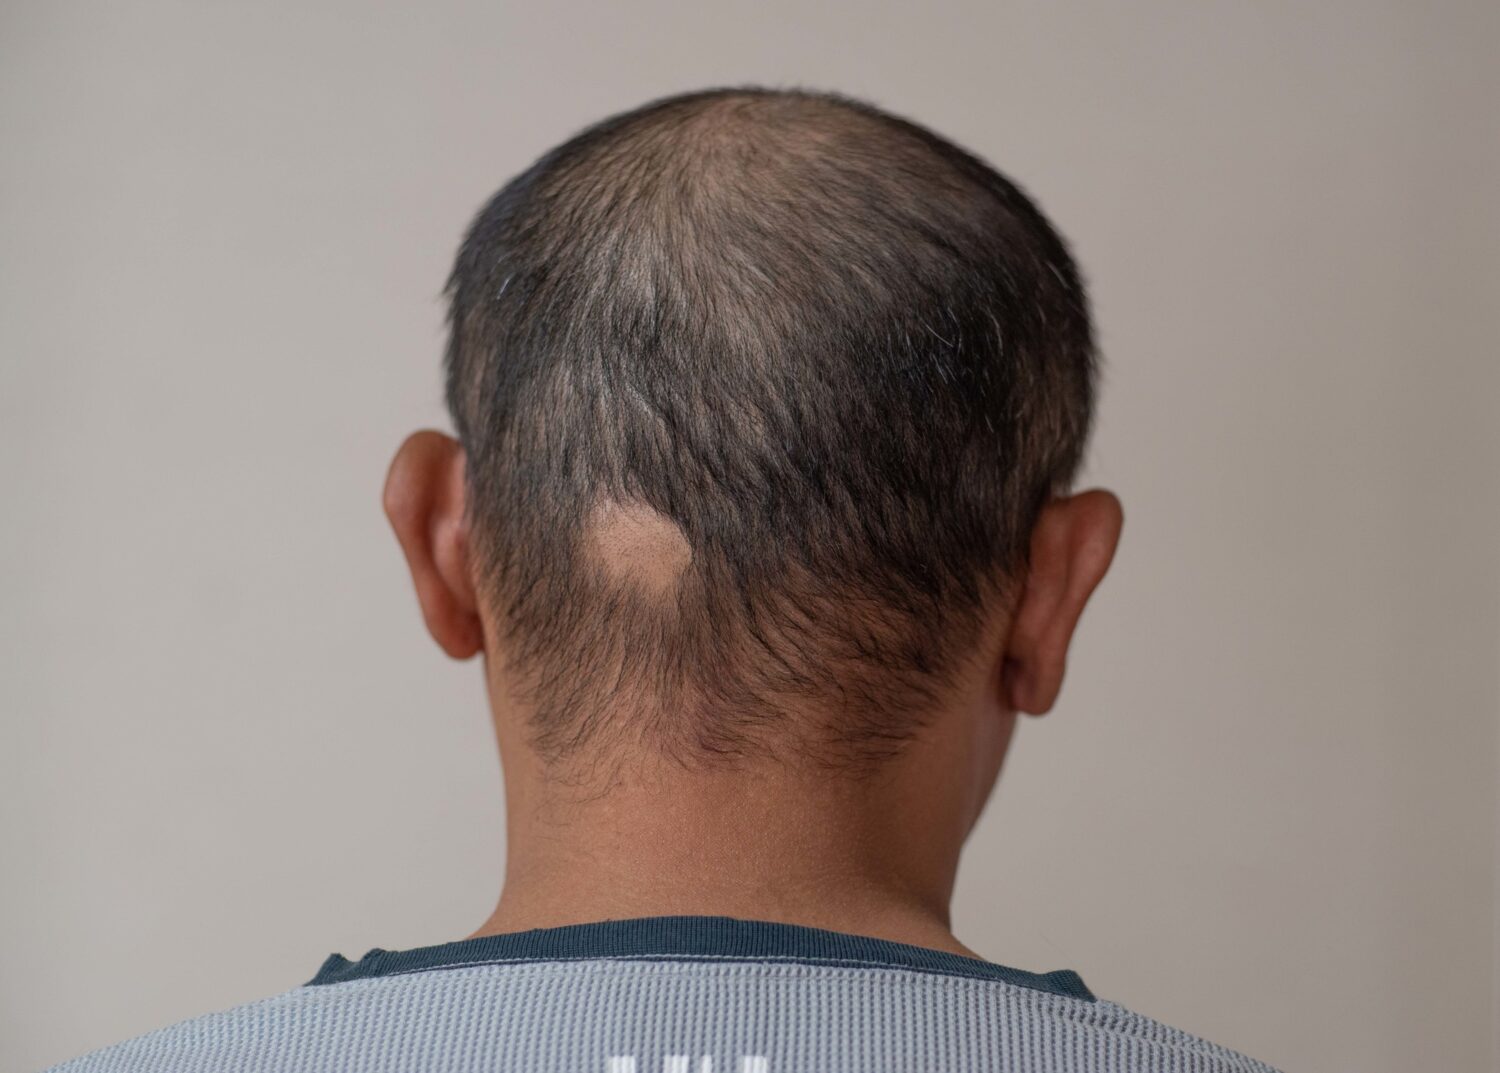 重症円形脱毛症、バリシチニブが毛髪再生を促すとの研究結果【医師による海外医学論文解説】